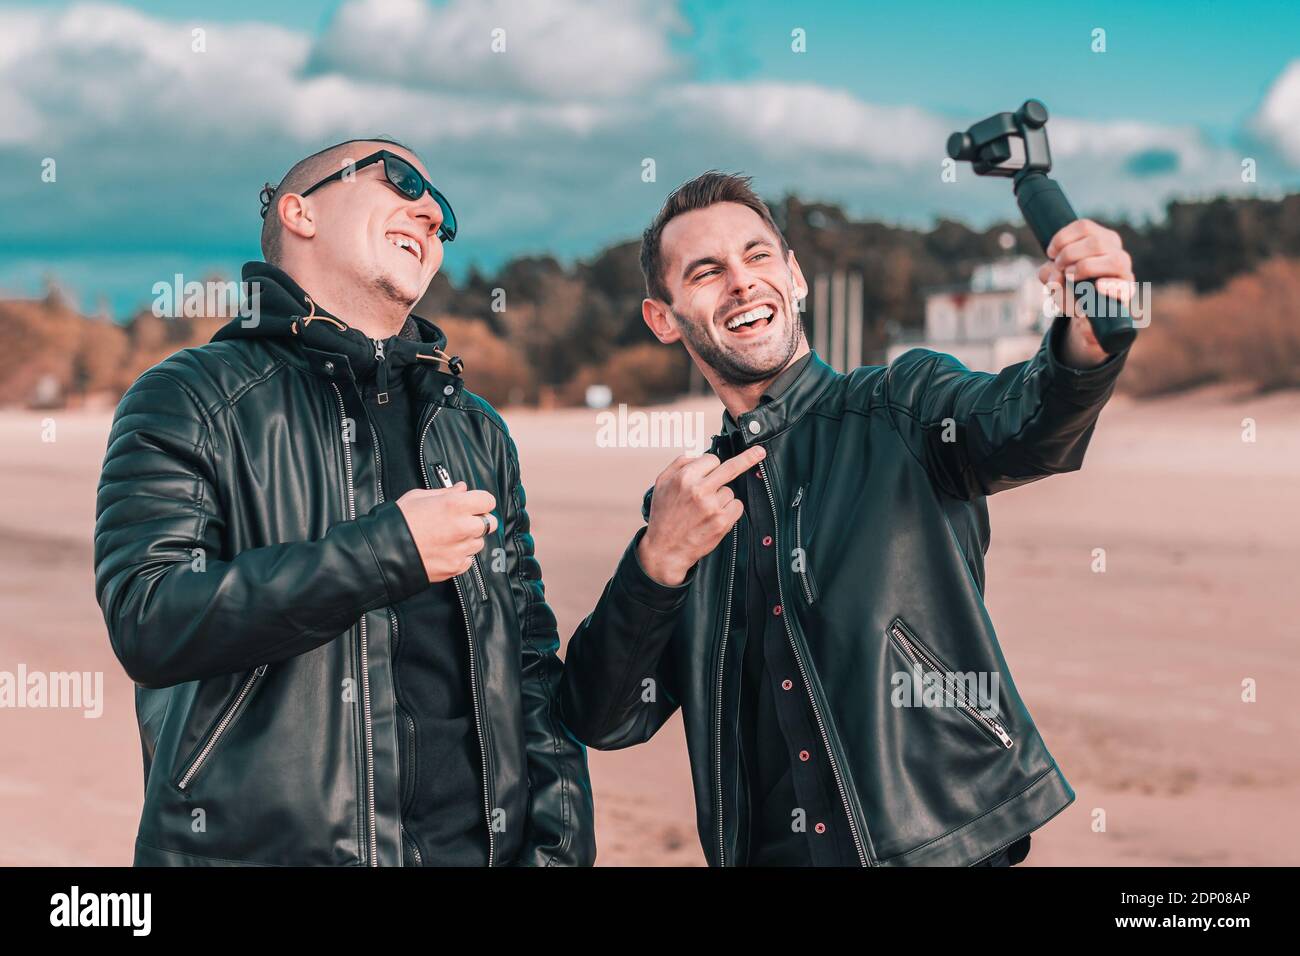 Zwei gutaussehende lächelnde Freunde machen Selfie mit Action-Kamera mit Gimbal Stabilisator am Strand. Jugendliche Männer in schwarzen Kleidern Spaß haben, indem Sie Fotos Stockfoto